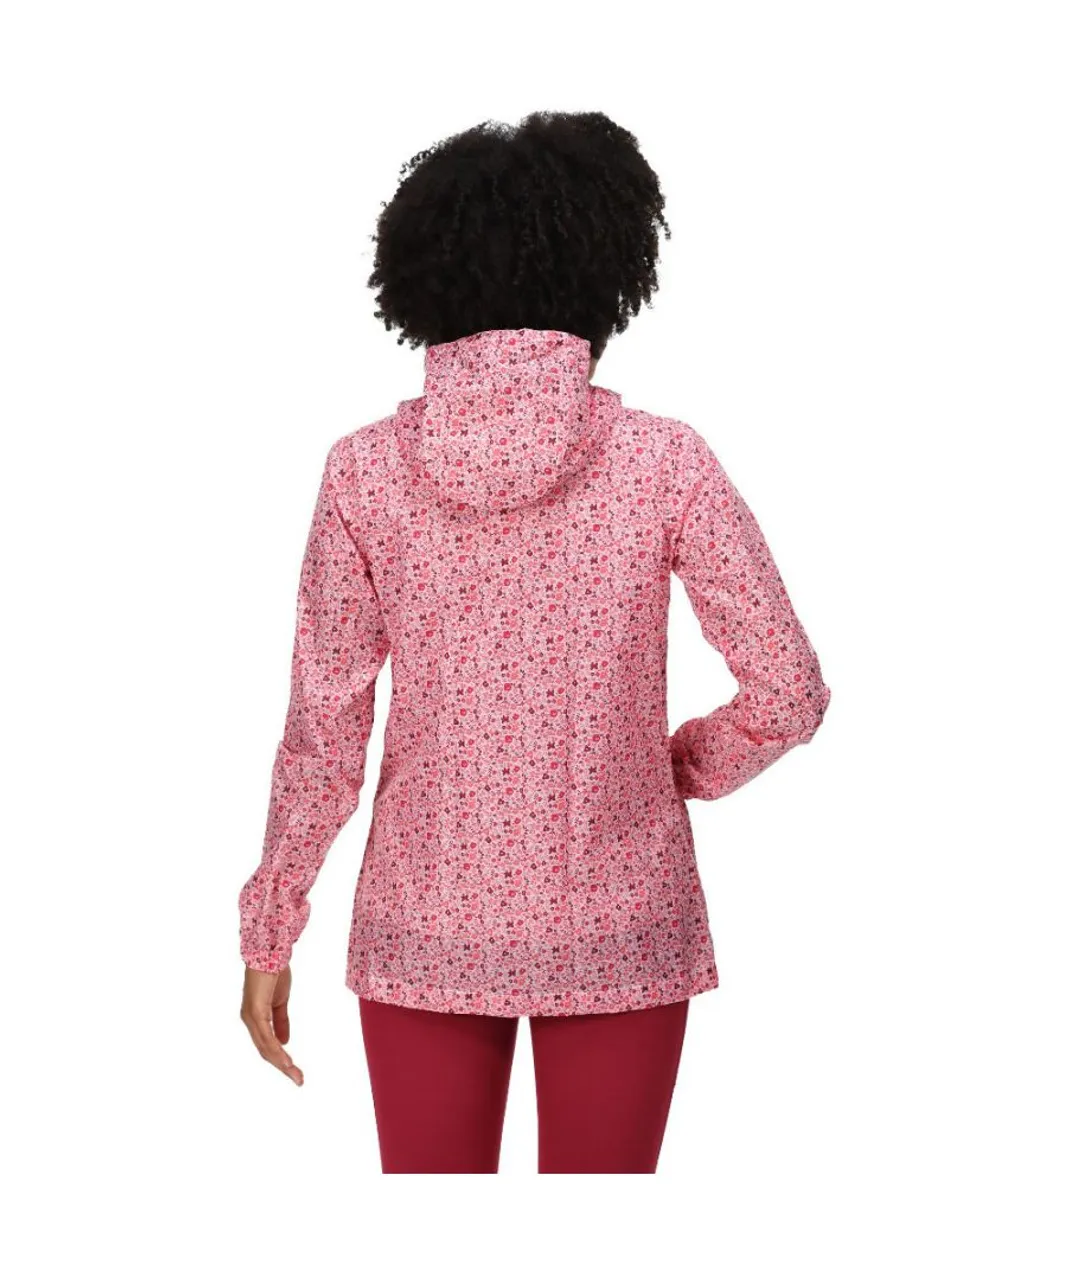 Regatta Womens Printed Pack It Waterproof Packable Jacket - Pink